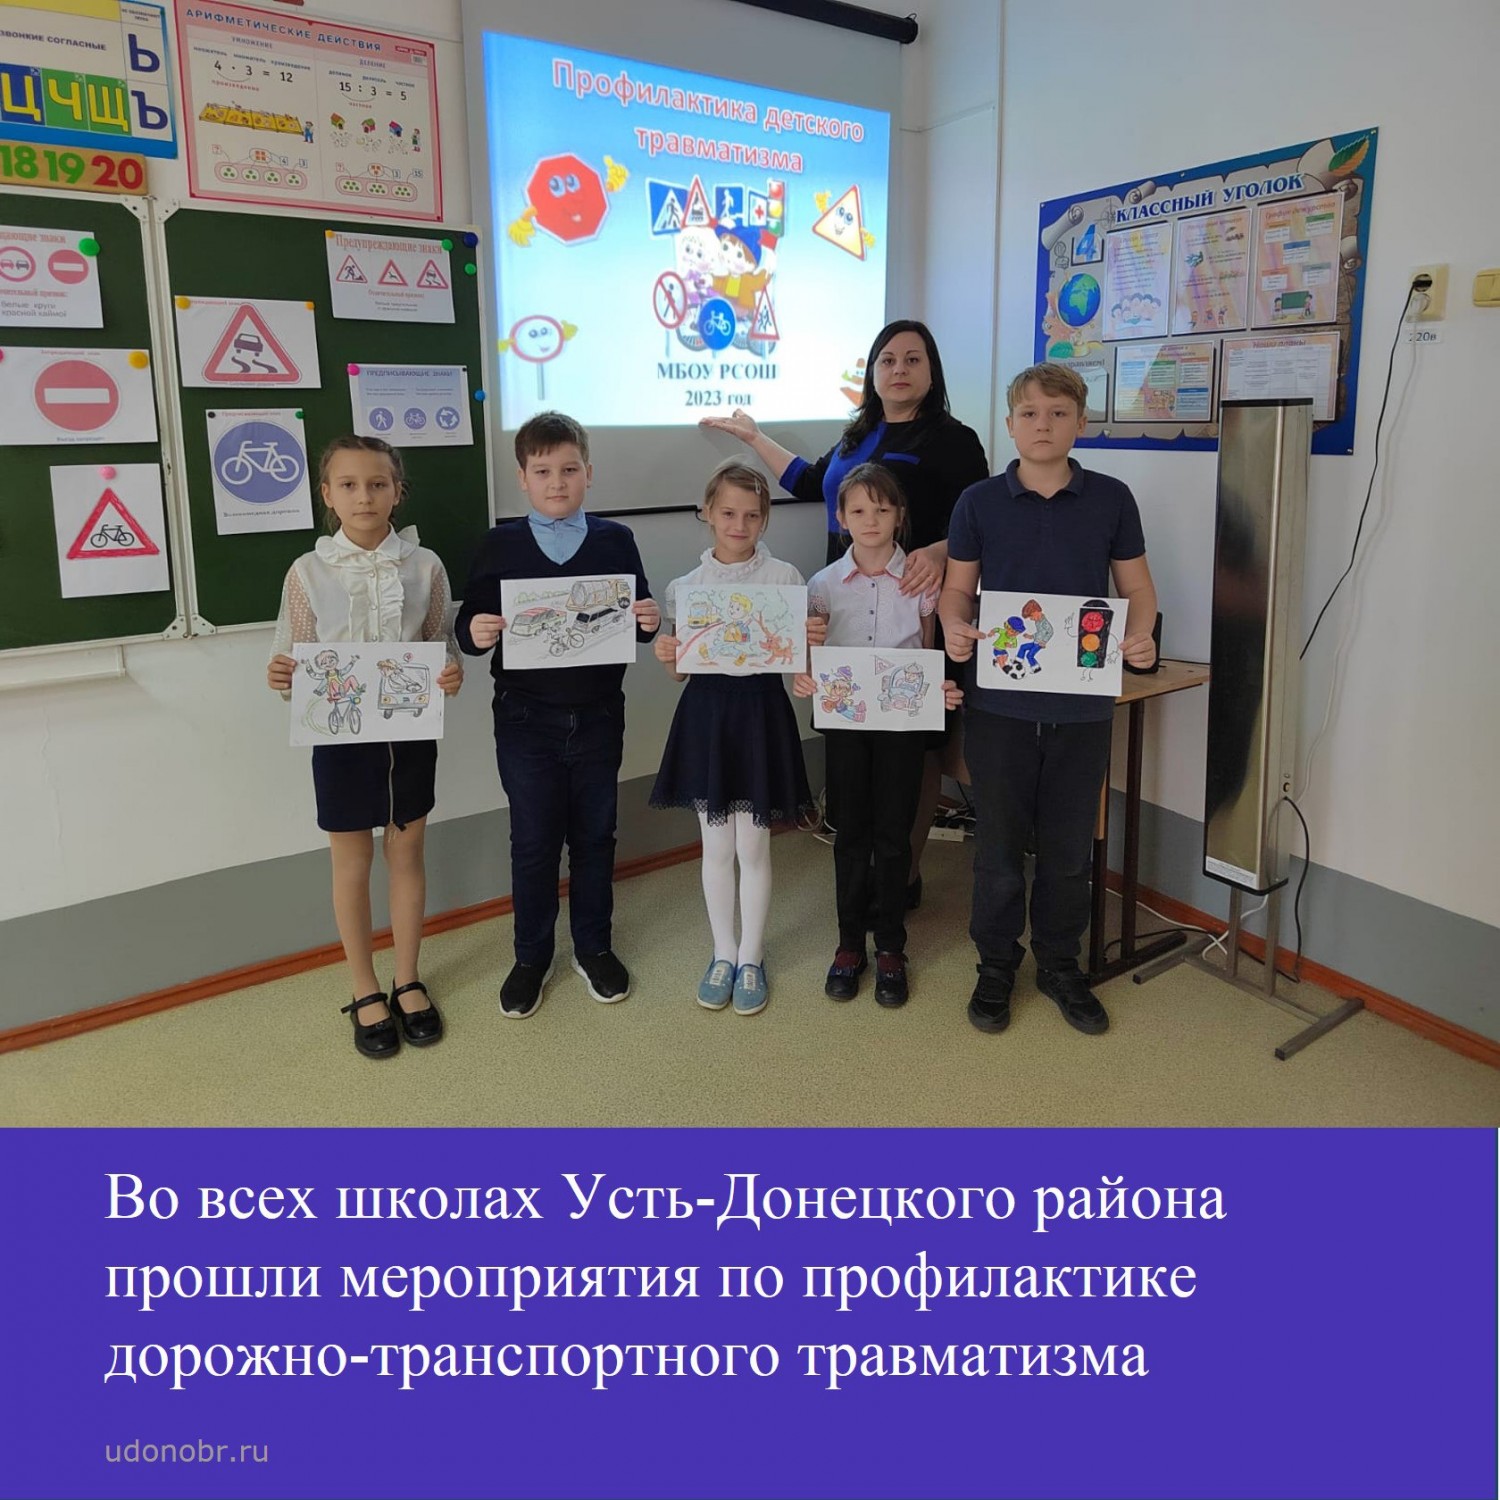 Во всех школах Усть-Донецкого района прошли мероприятия по профилактике дорожно-транспортного травматизма